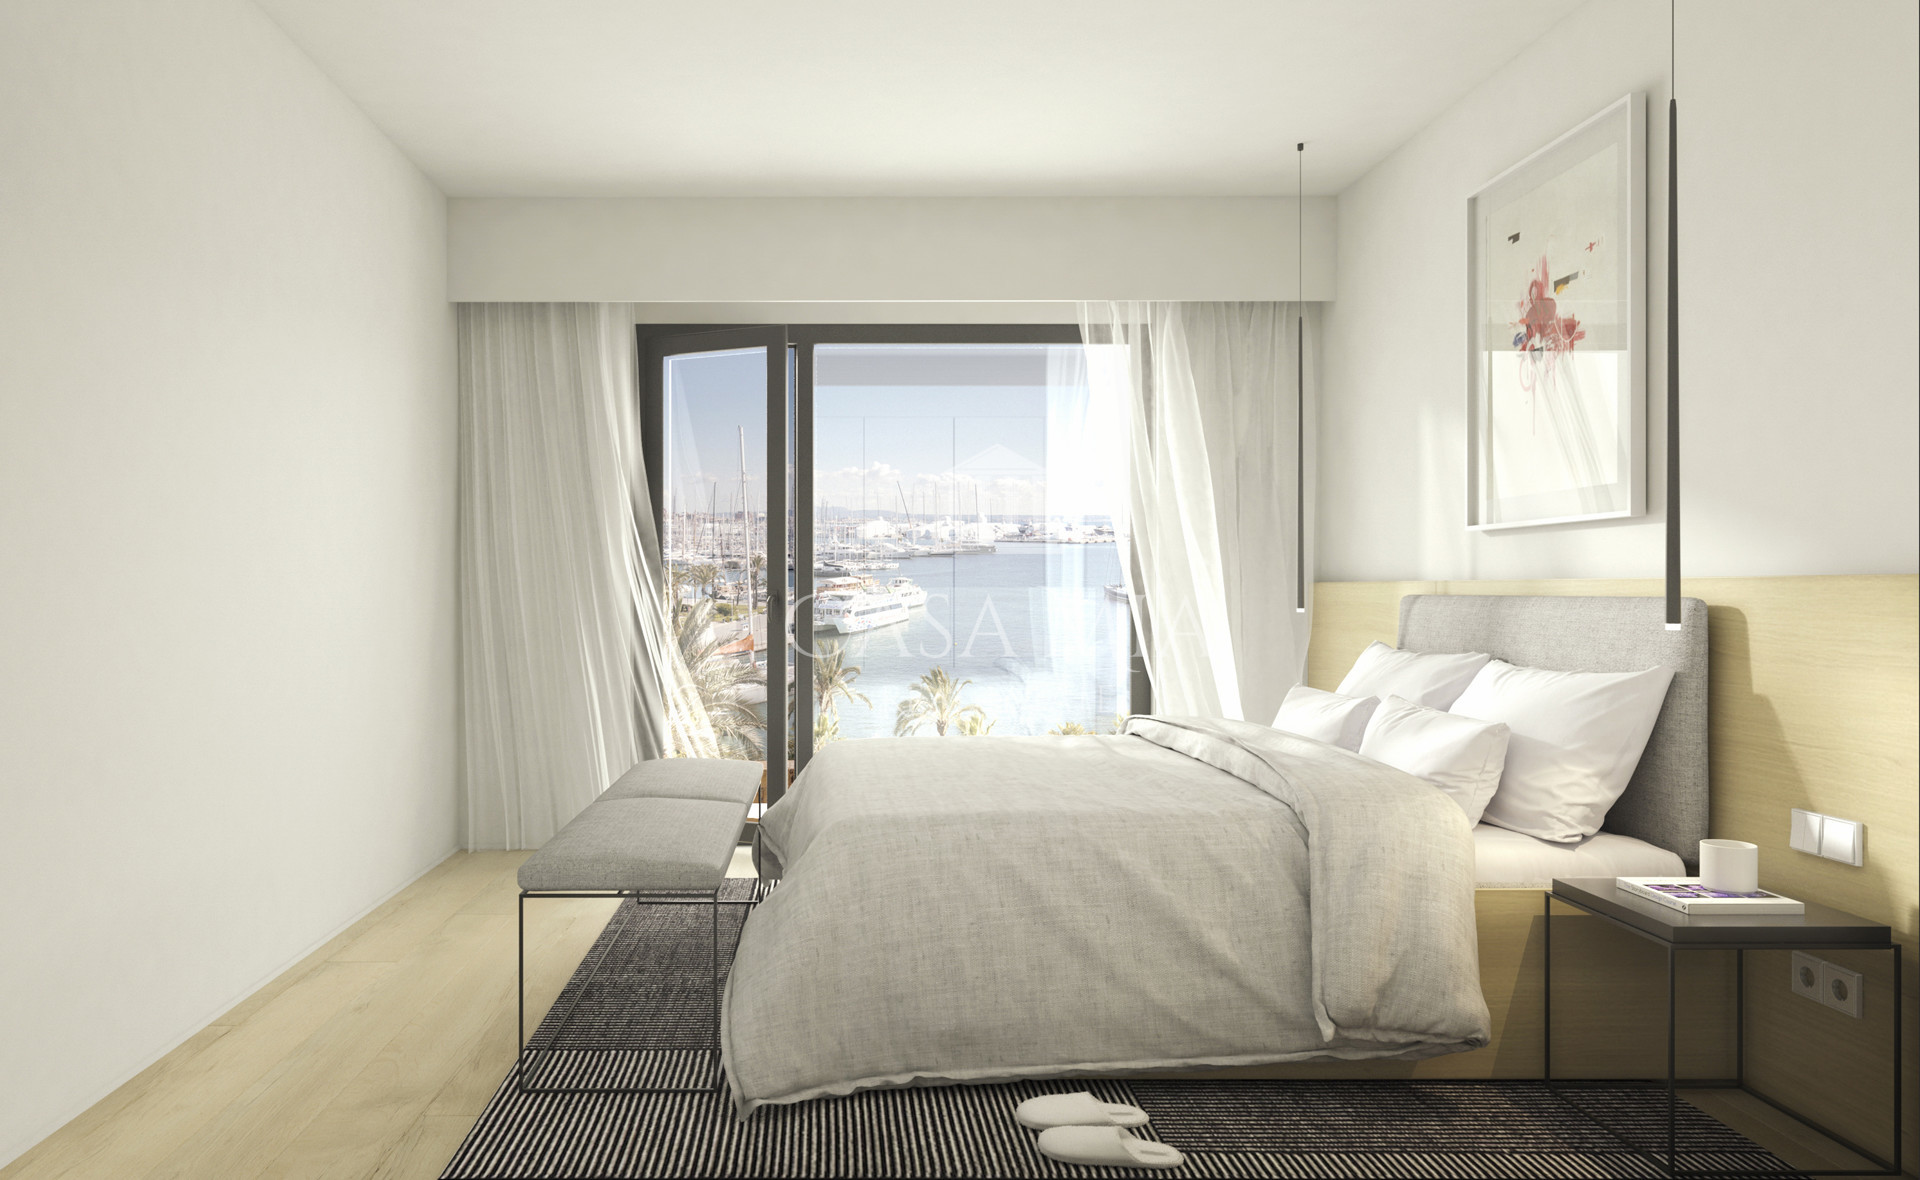 Appartement exclusif avec vue sur la mer, directement sur le Paseo Maritimo, Palma.